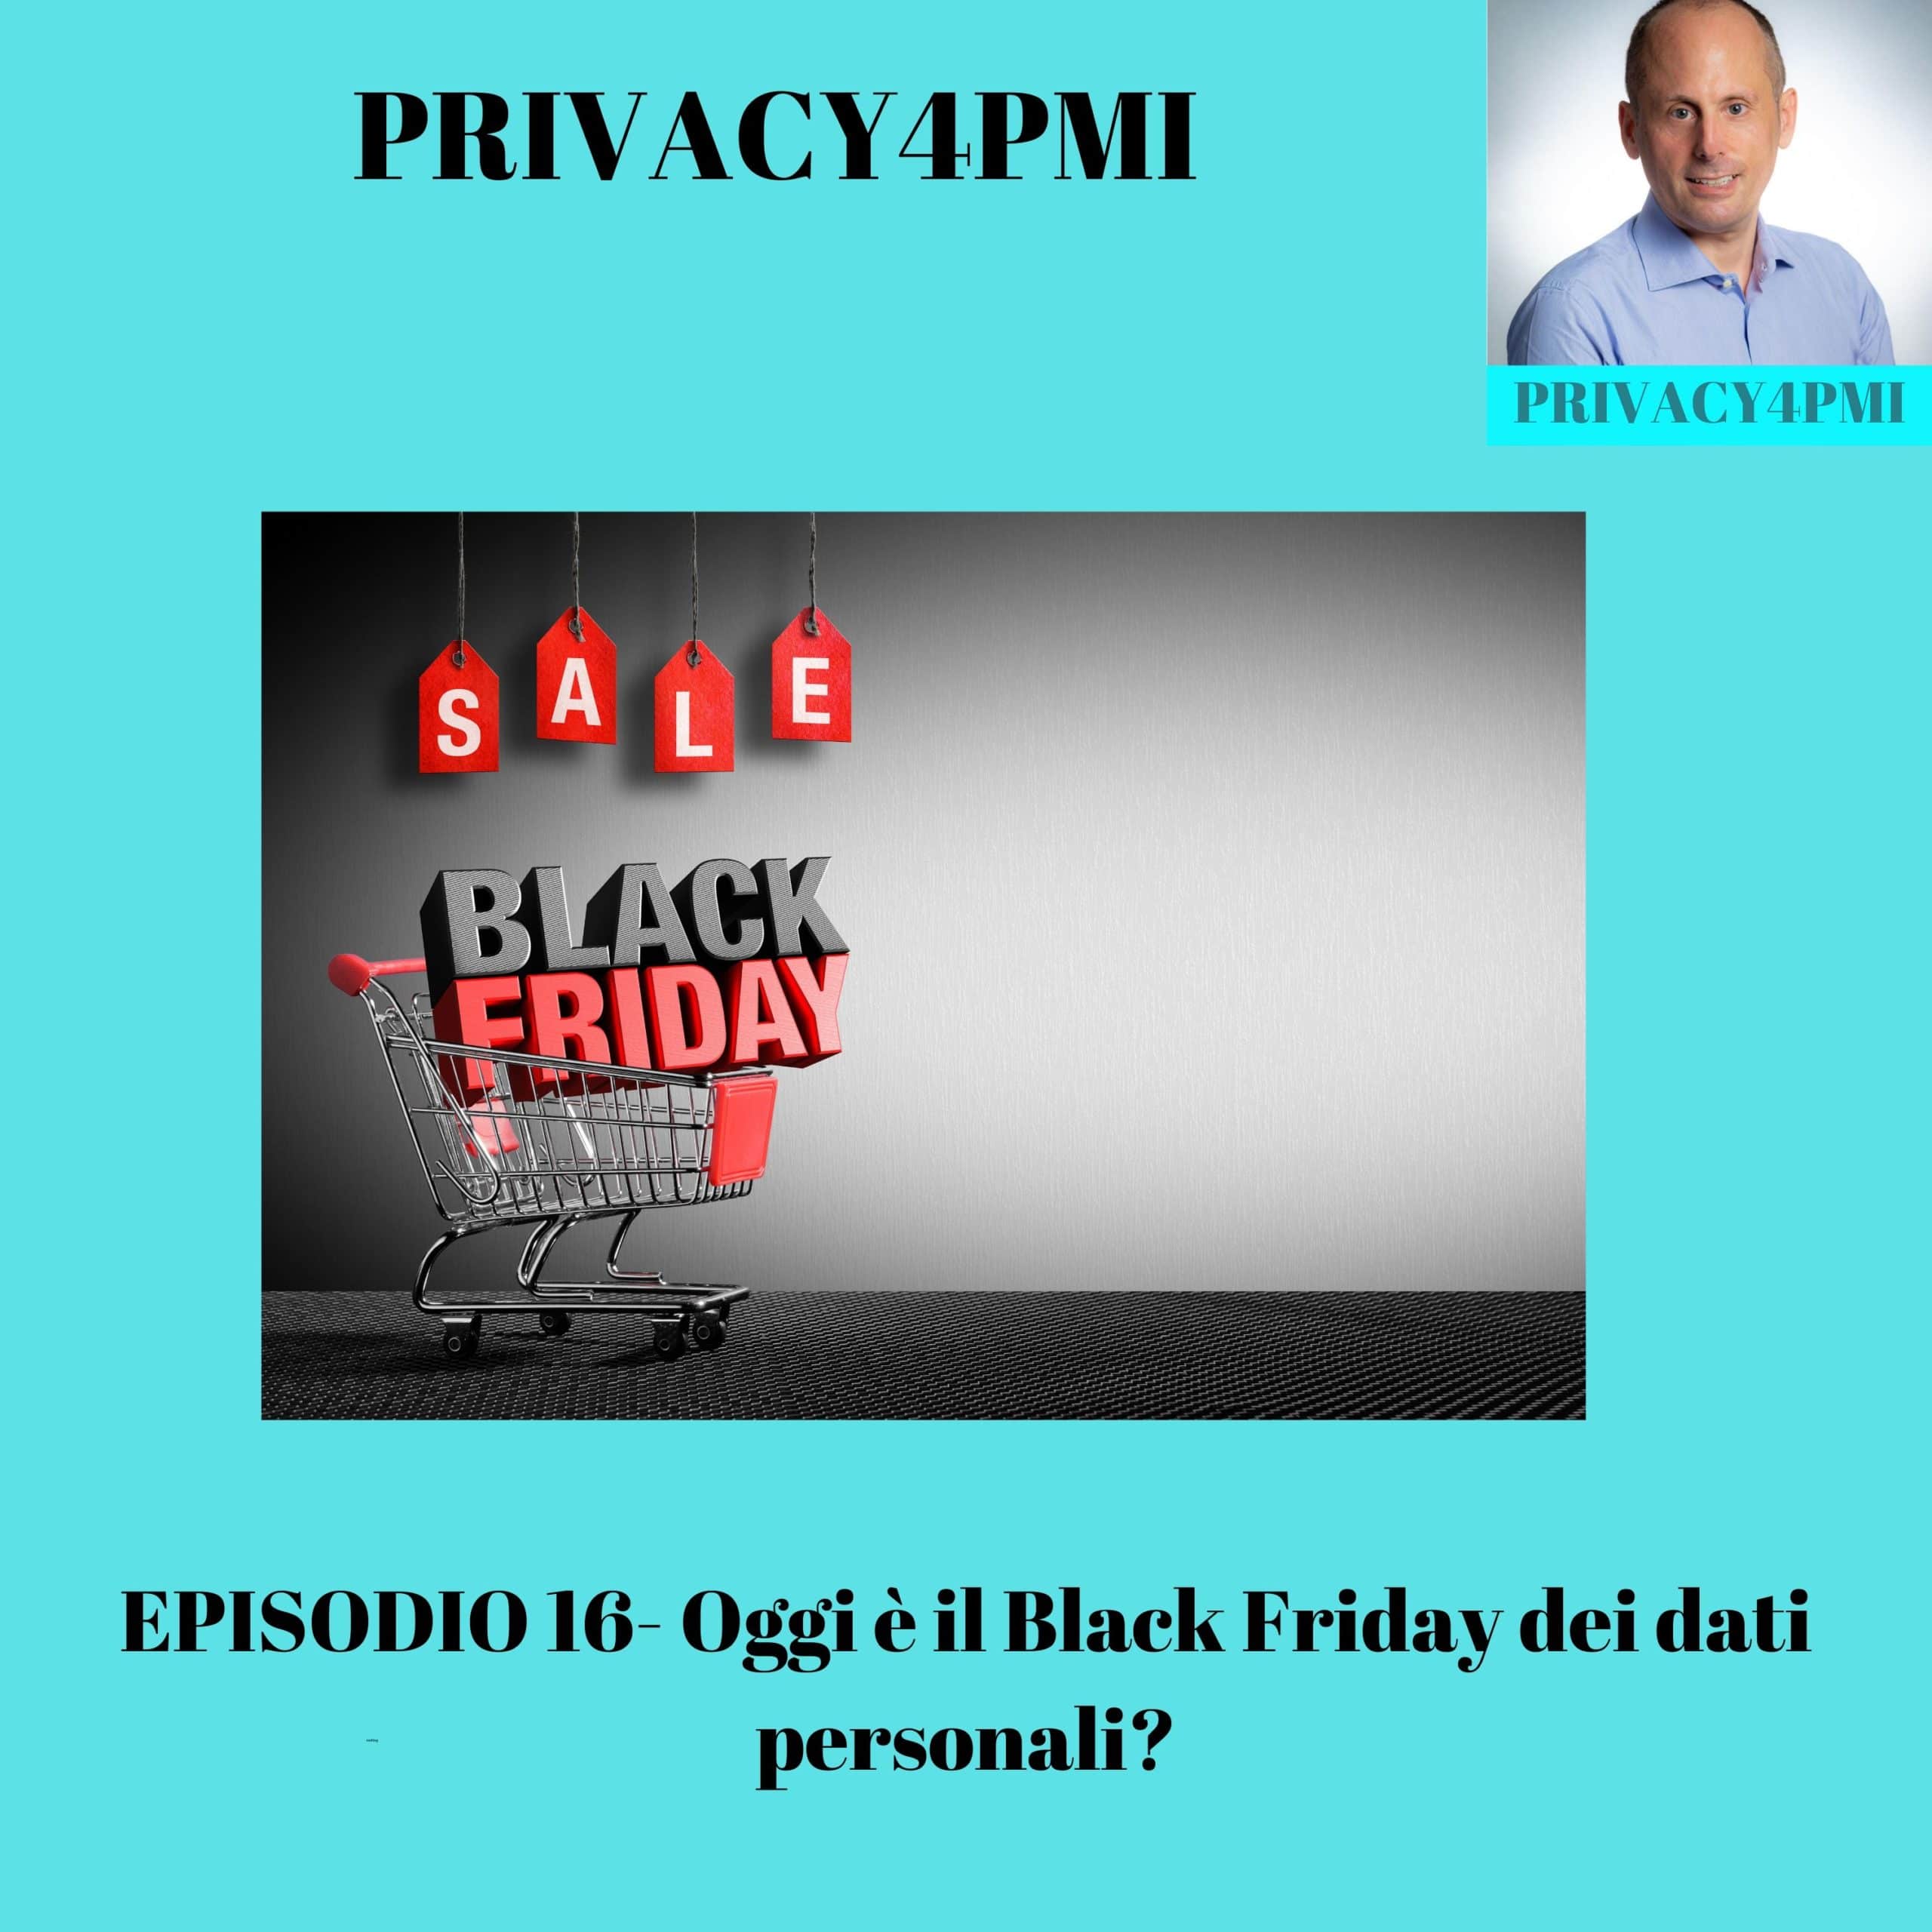 Episodio 16: Oggi è il Black Friday dei dati personali? Privacy4PMI podcast